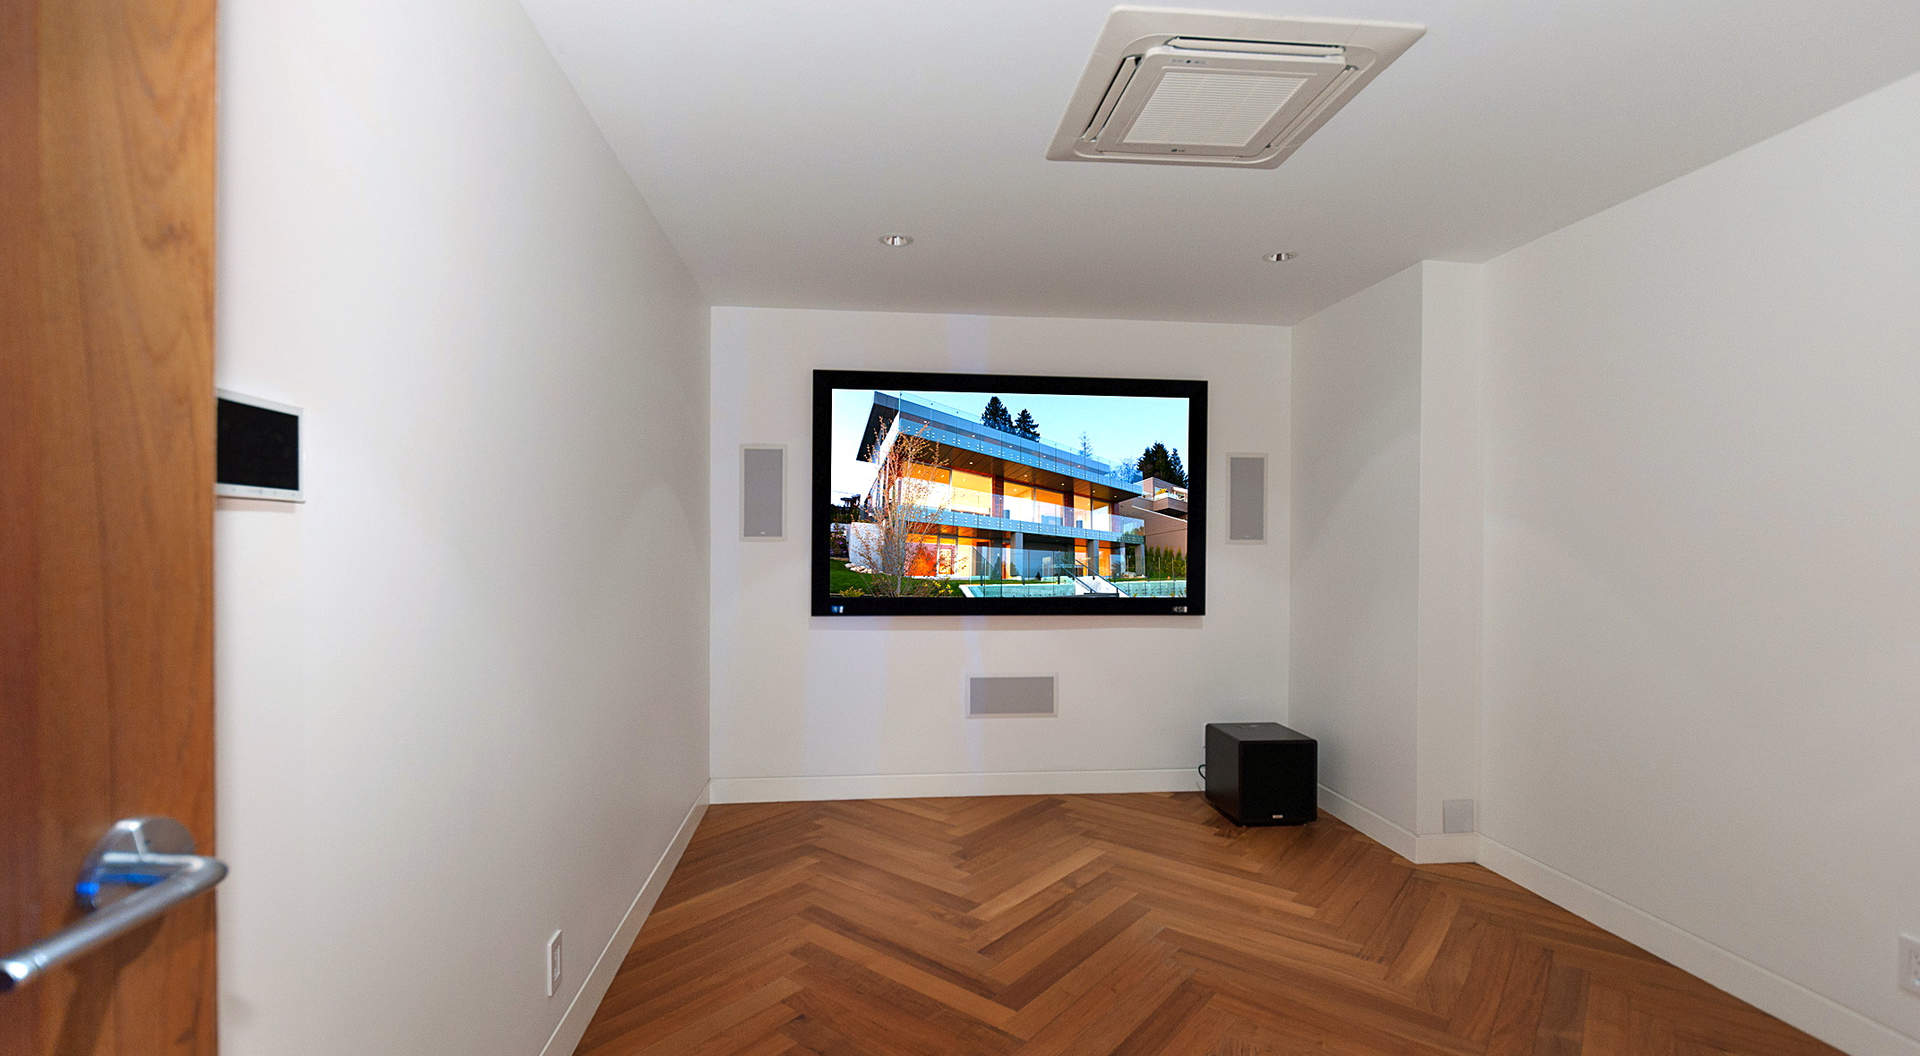 Fabulous Home Theater con "Control 4" La tecnología Smart Home